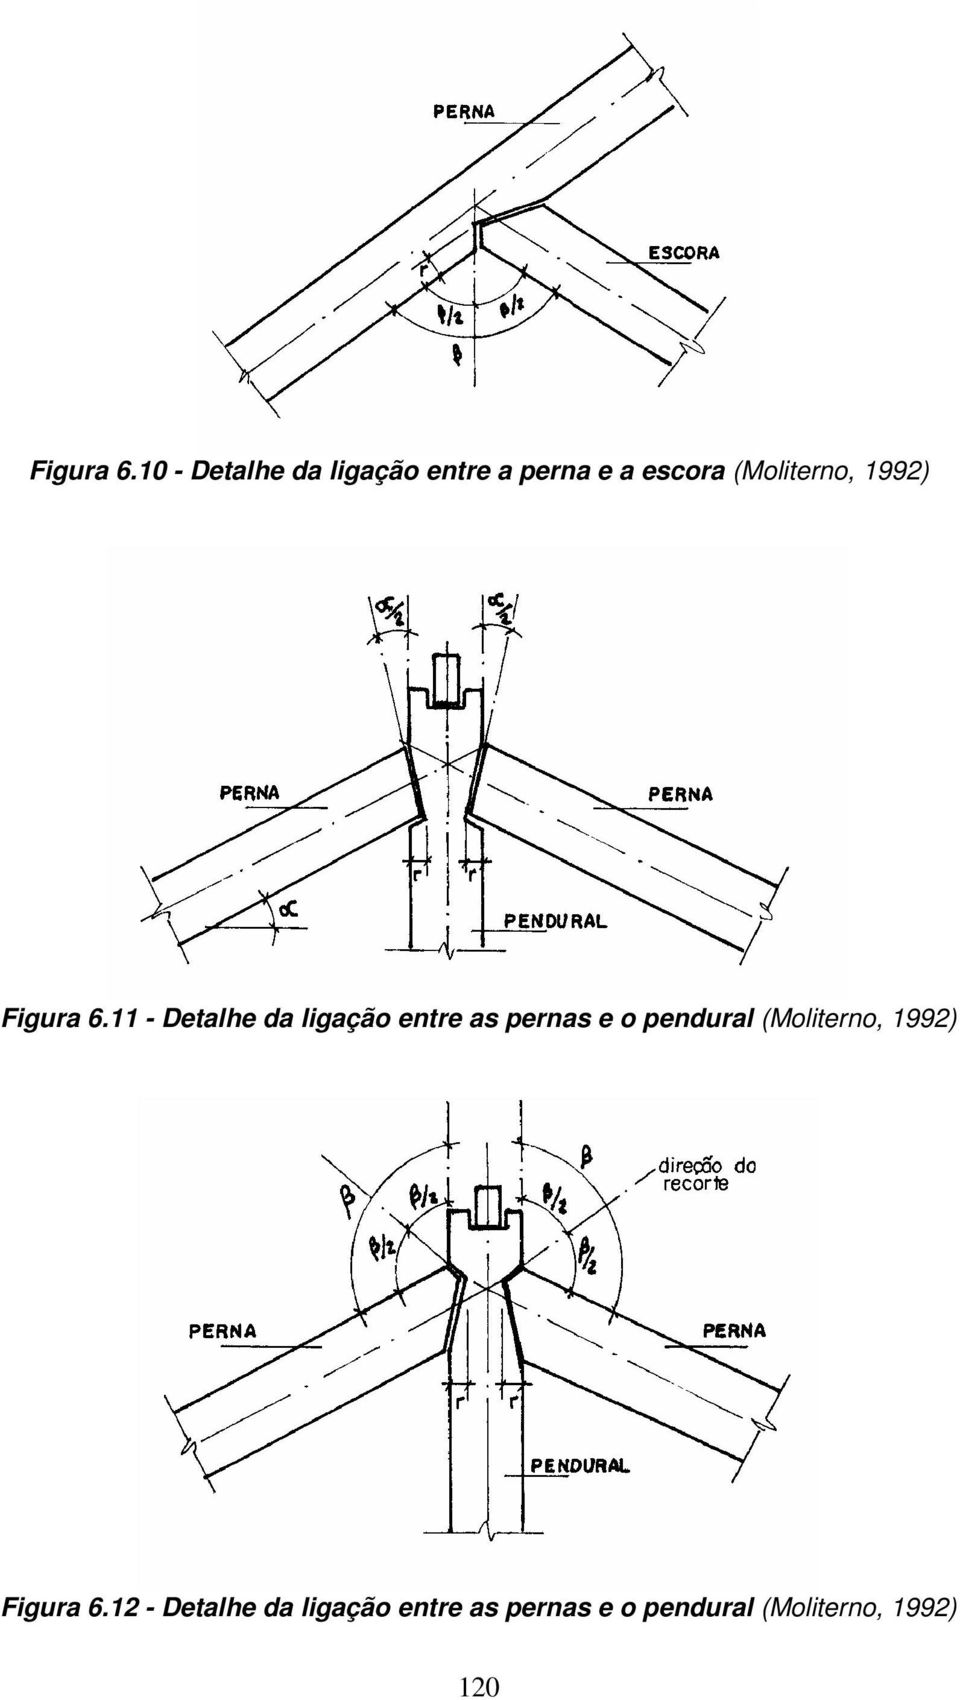 (Moliterno, 1992) 11 - Detalhe da ligação entre as pernas e